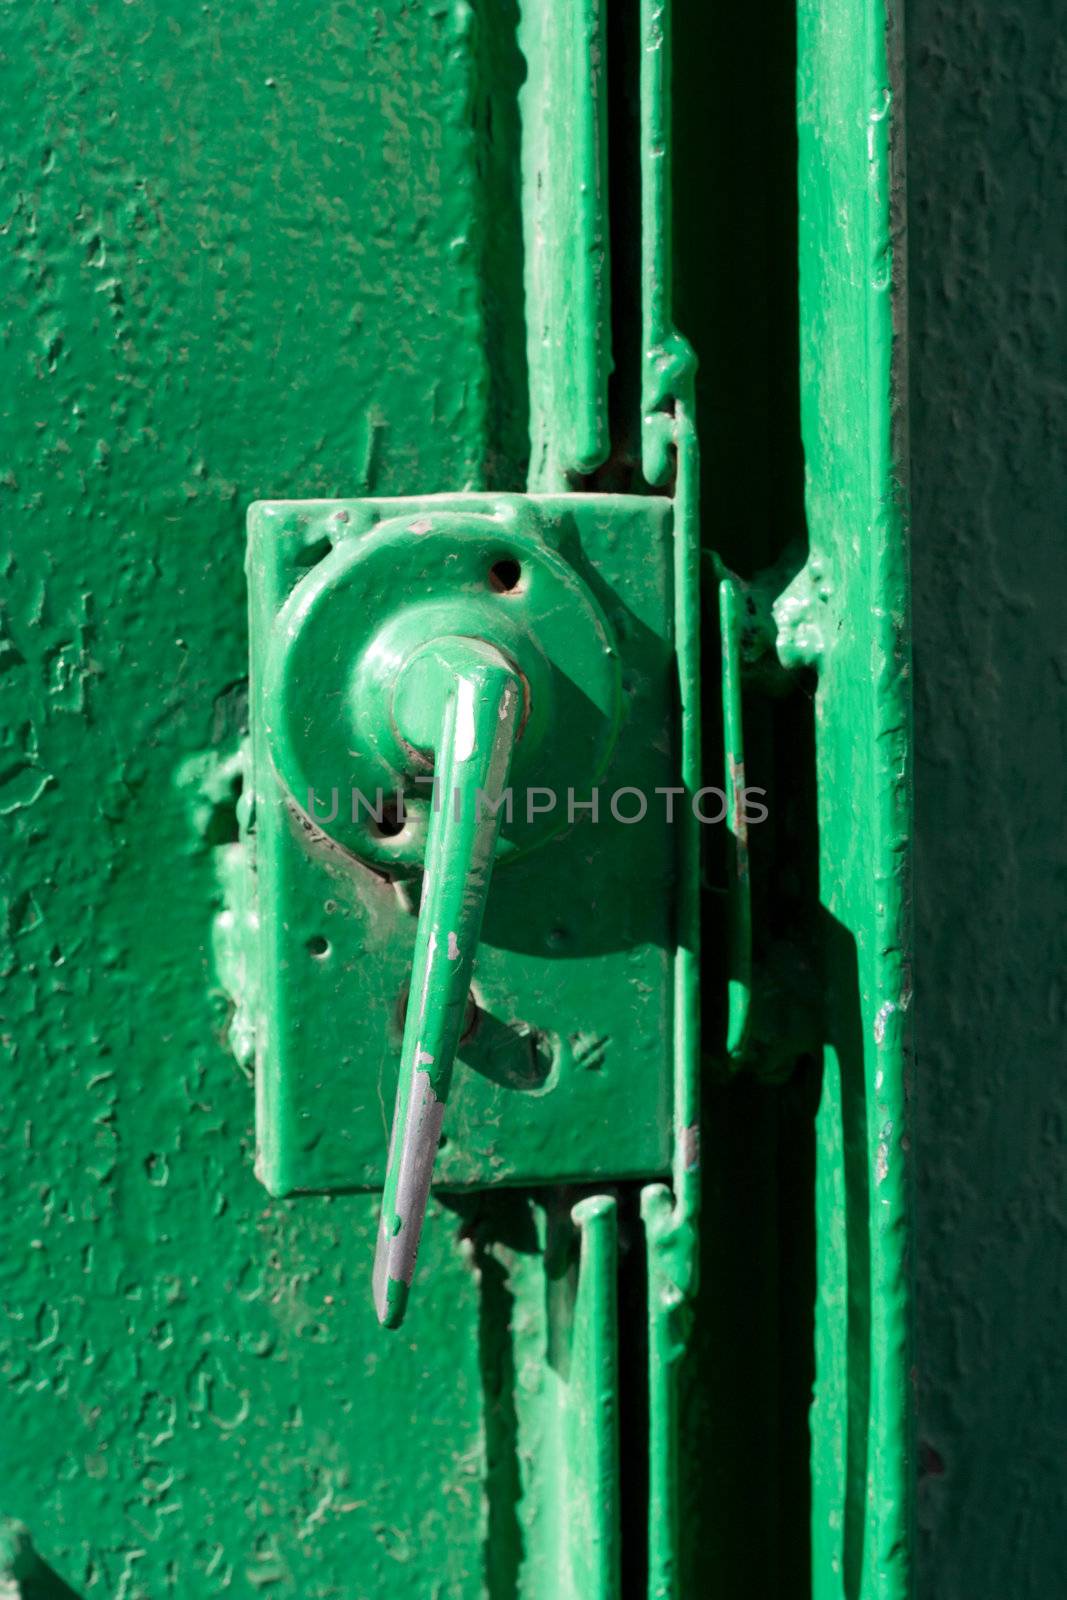 Old Green Door Handle and Lock  by schankz